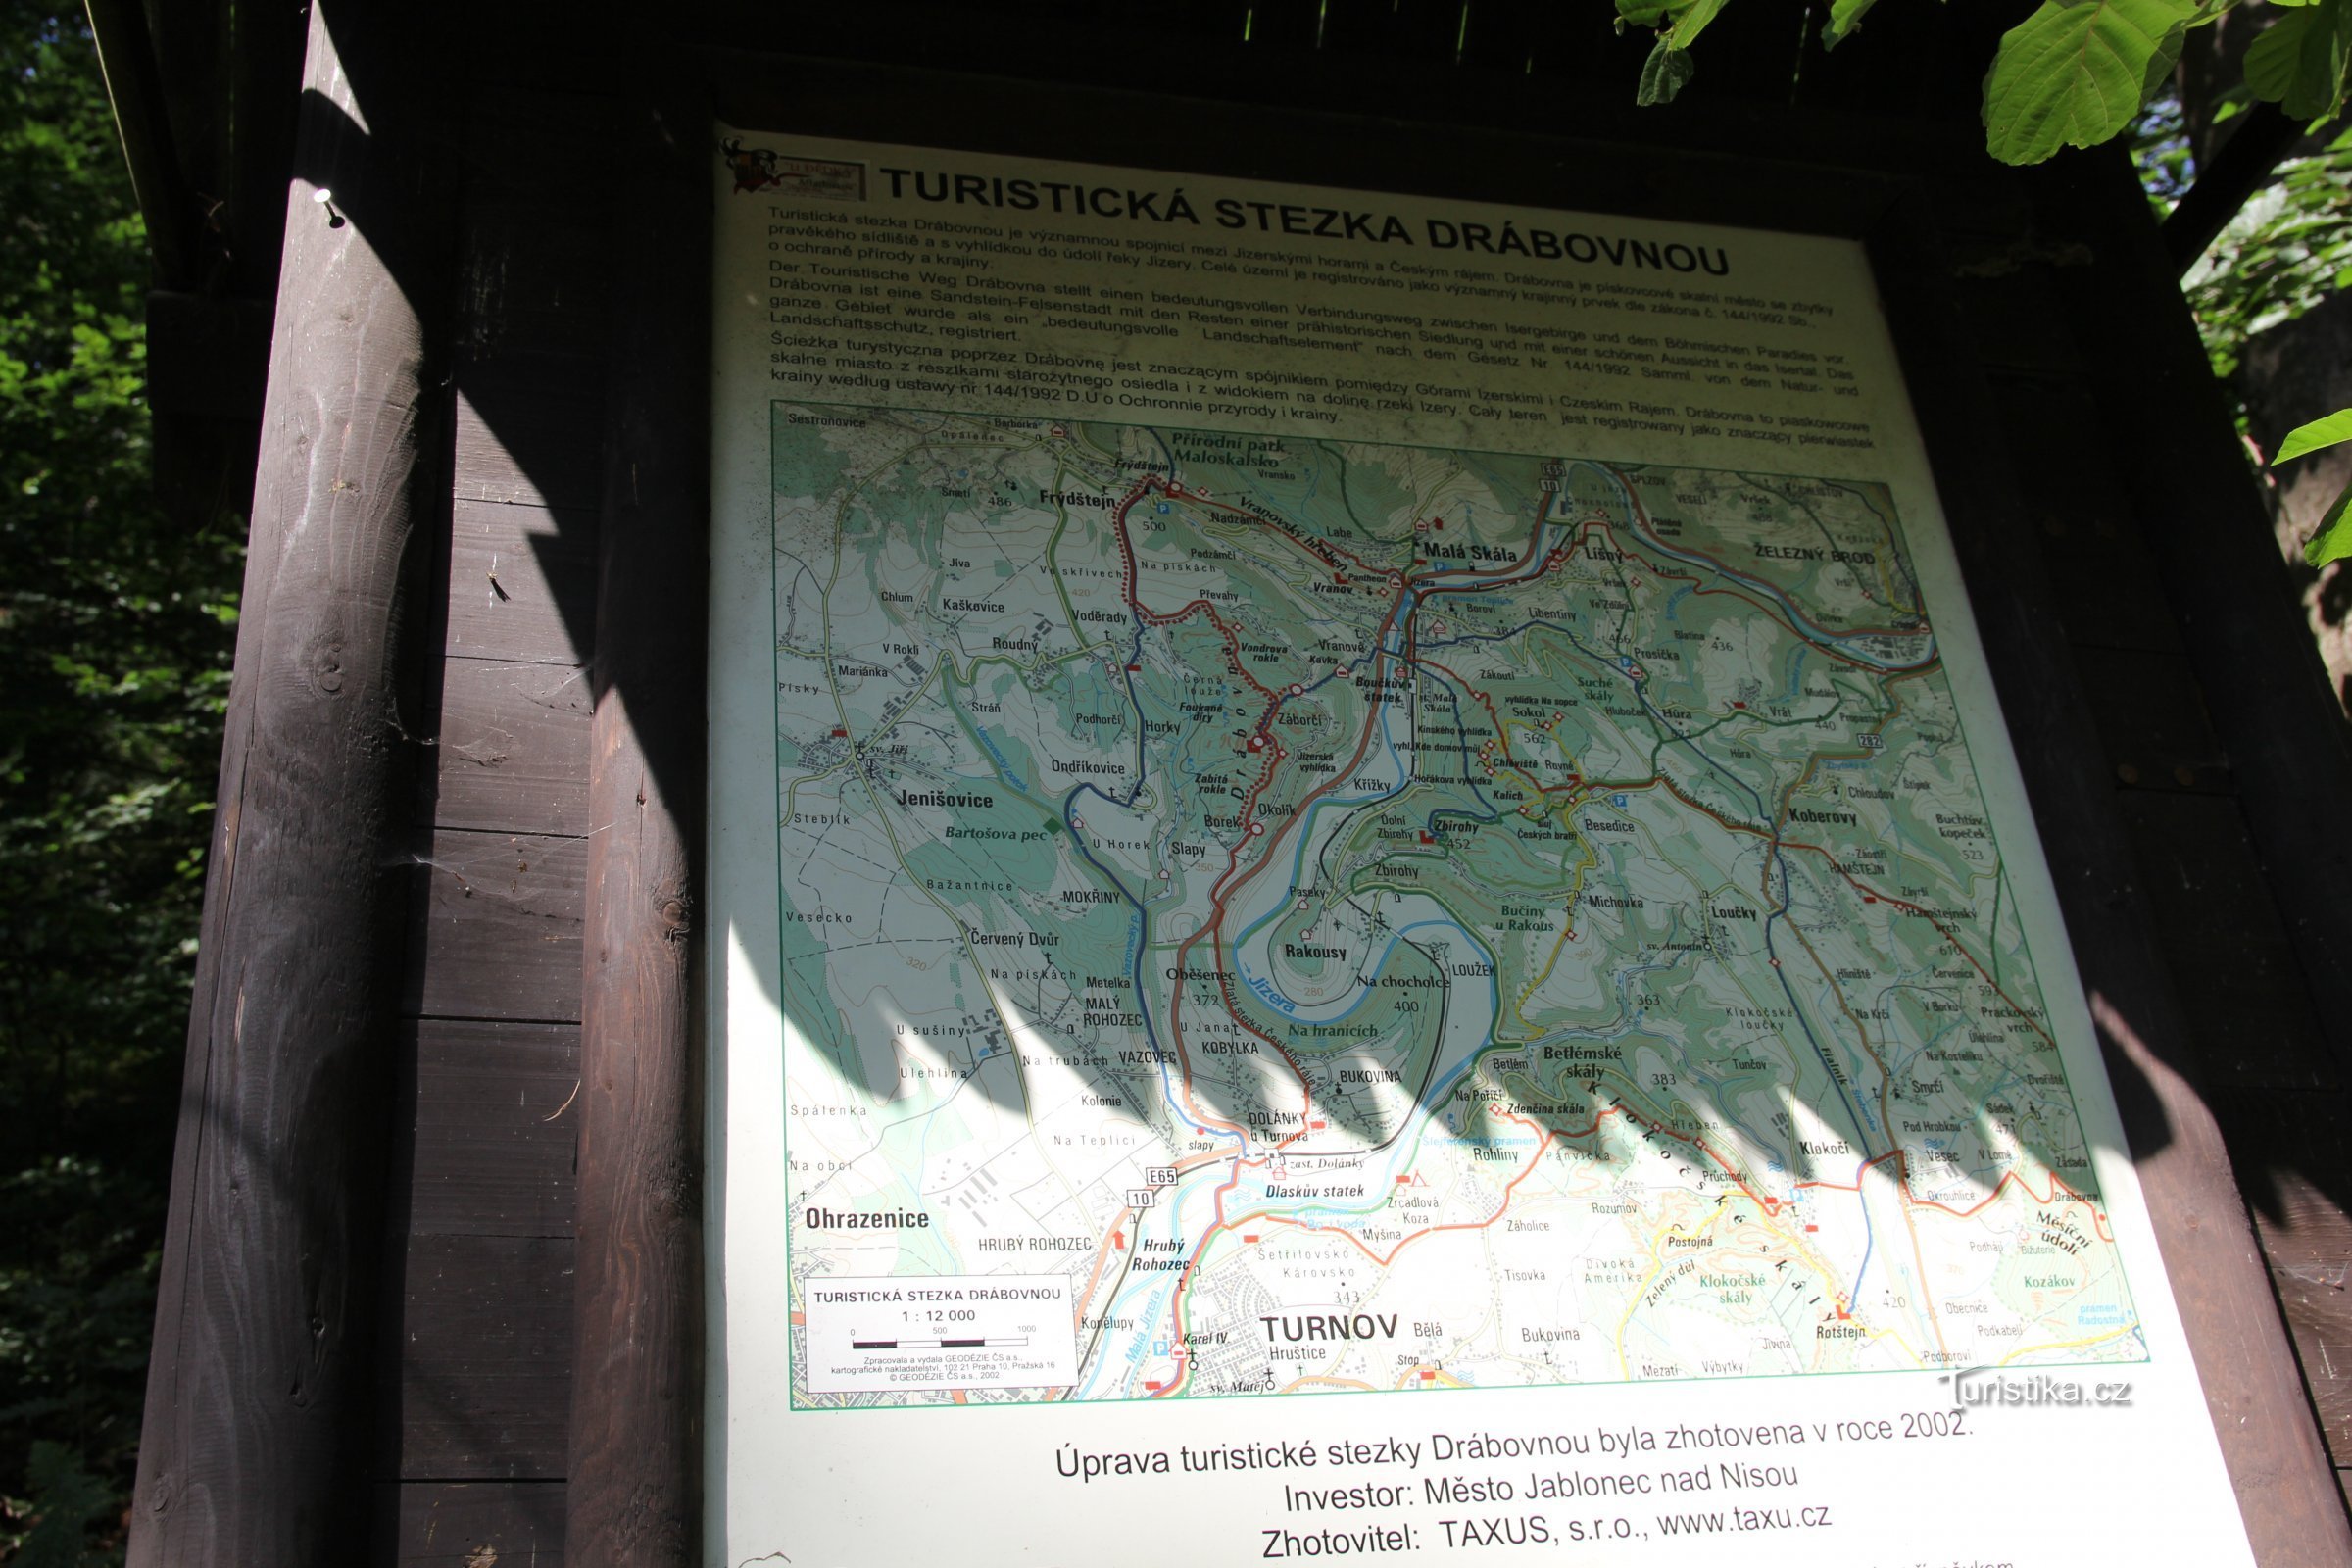 kort over Drábovna-området